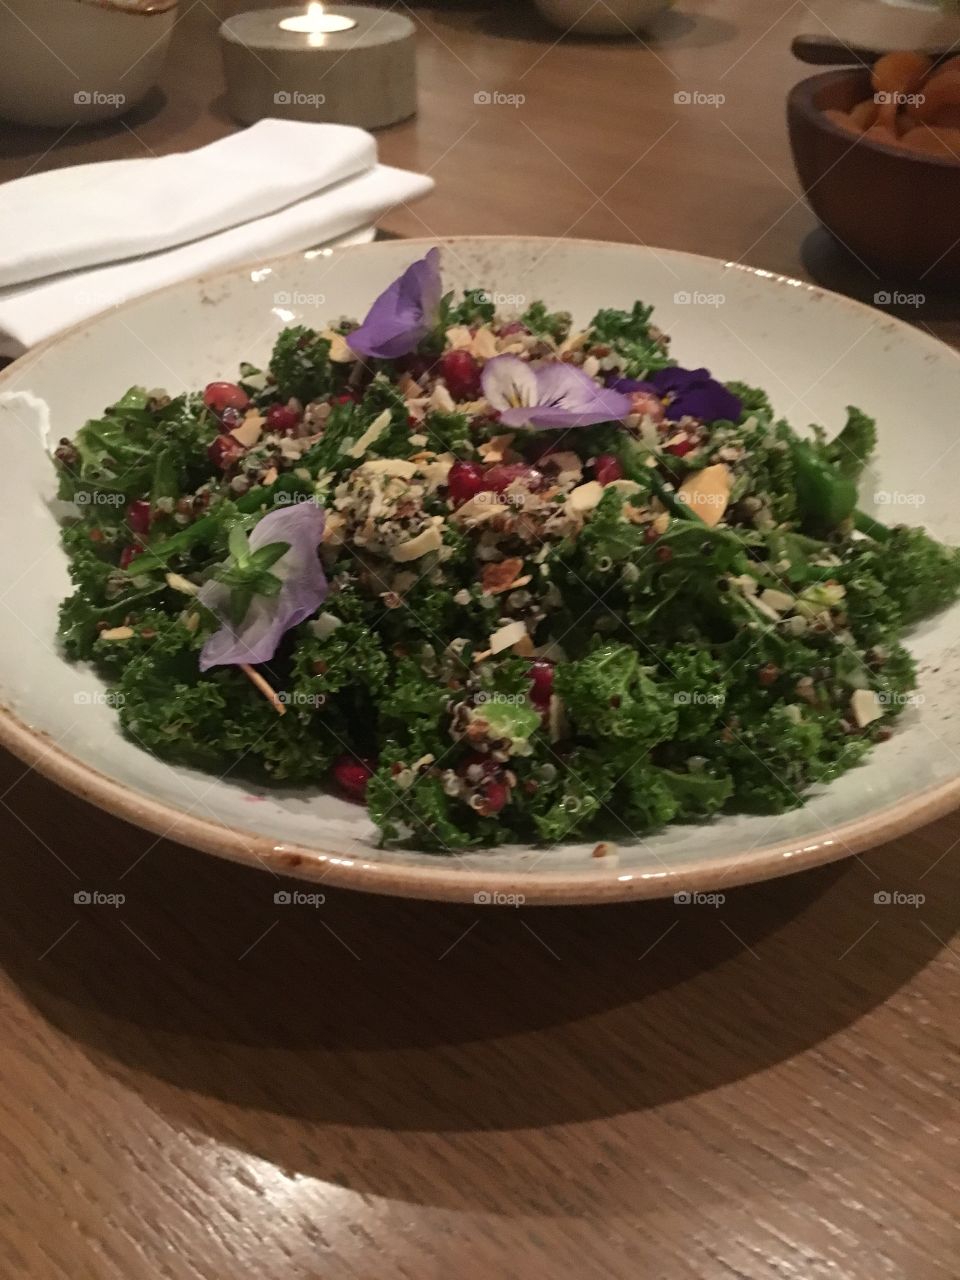 Floral quinoa salad